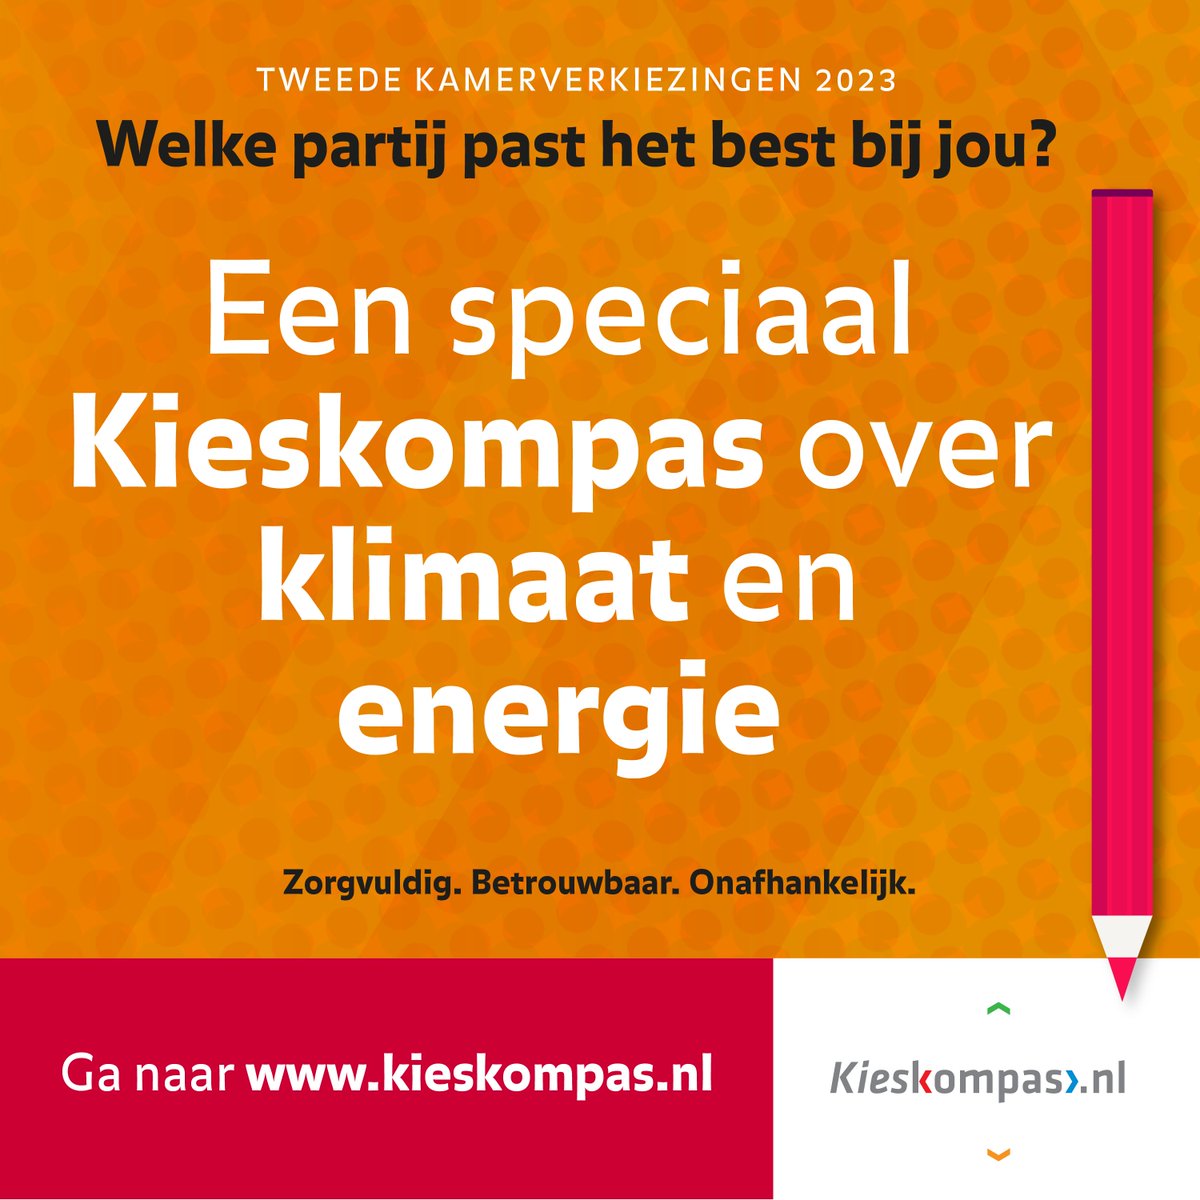 Energie is belangrijk voor ons dagelijks leven, maar levert ook belangrijke dilemma’s op. Wil jij weten welke partij het best aansluit bij jouw mening ten aanzien van Klimaat en Energie, kijk dan op het energiekieskompas: energiekieskompas.nl/nl/